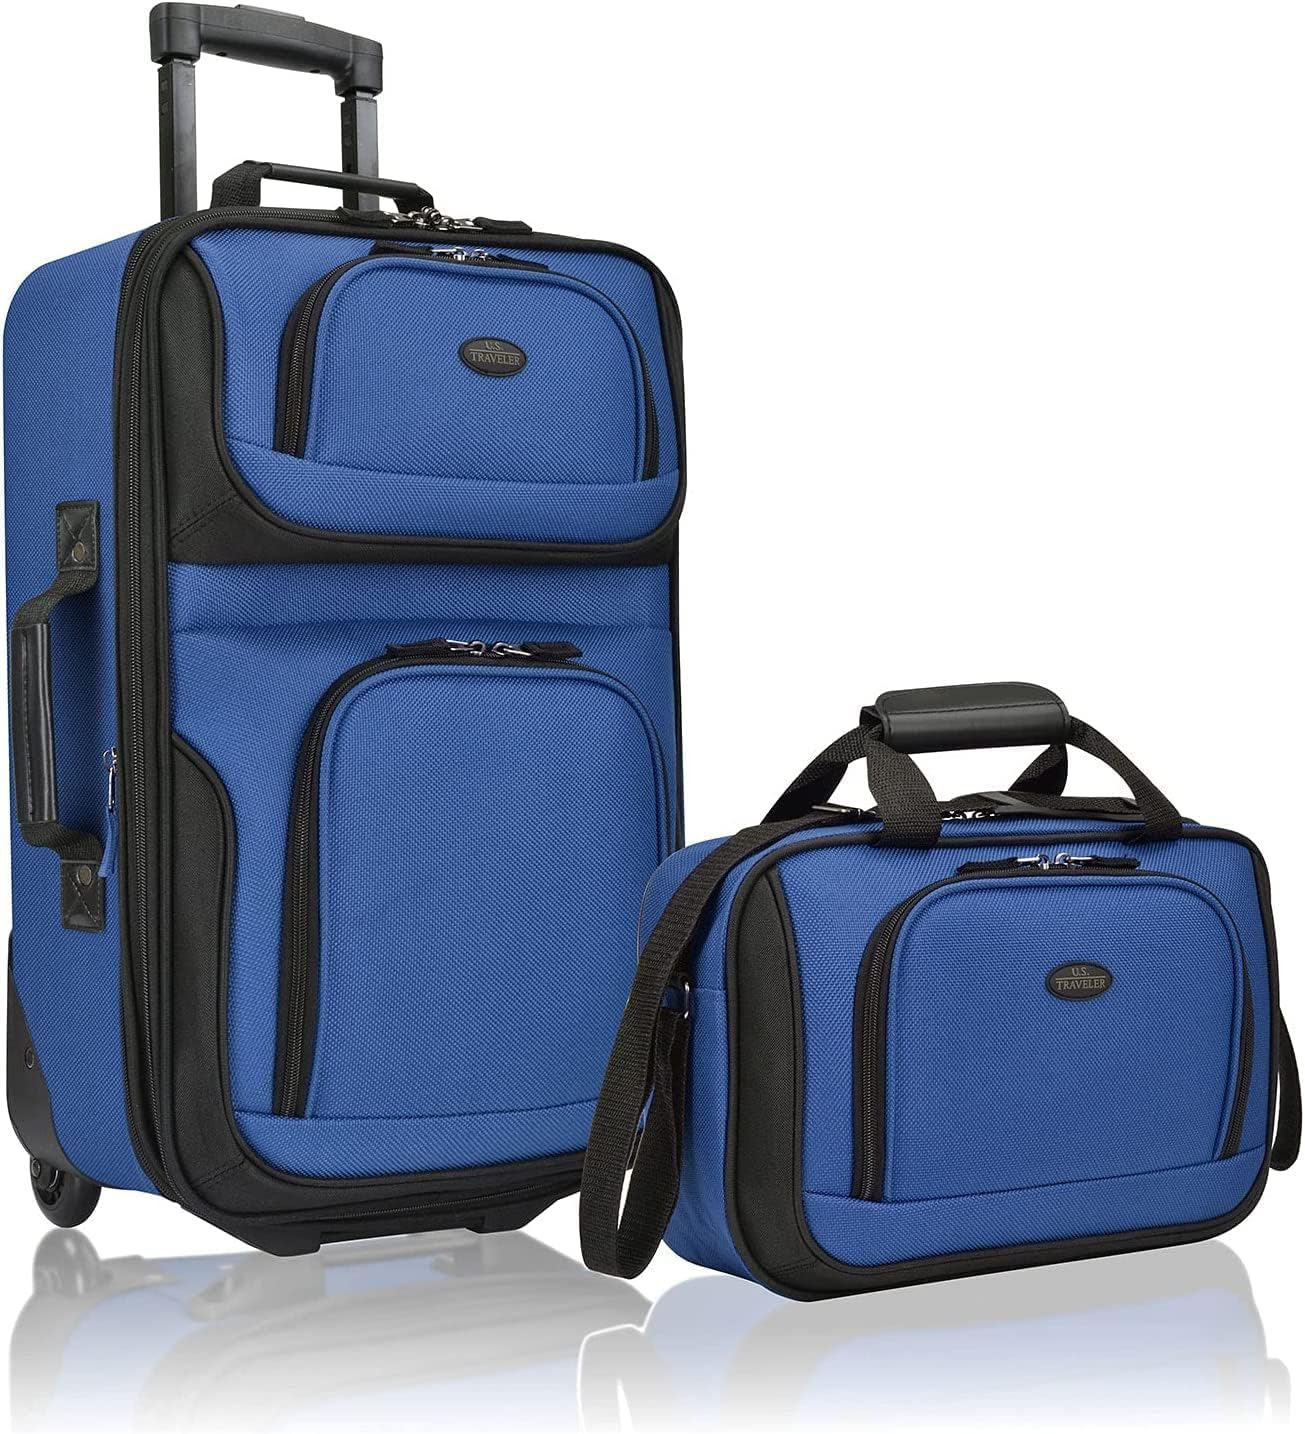 U.S. Traveler 2 Wheel 2PC Royal Blue Fabric Luggage Set. 202Sets. EXW Los Angeles $30.00set.